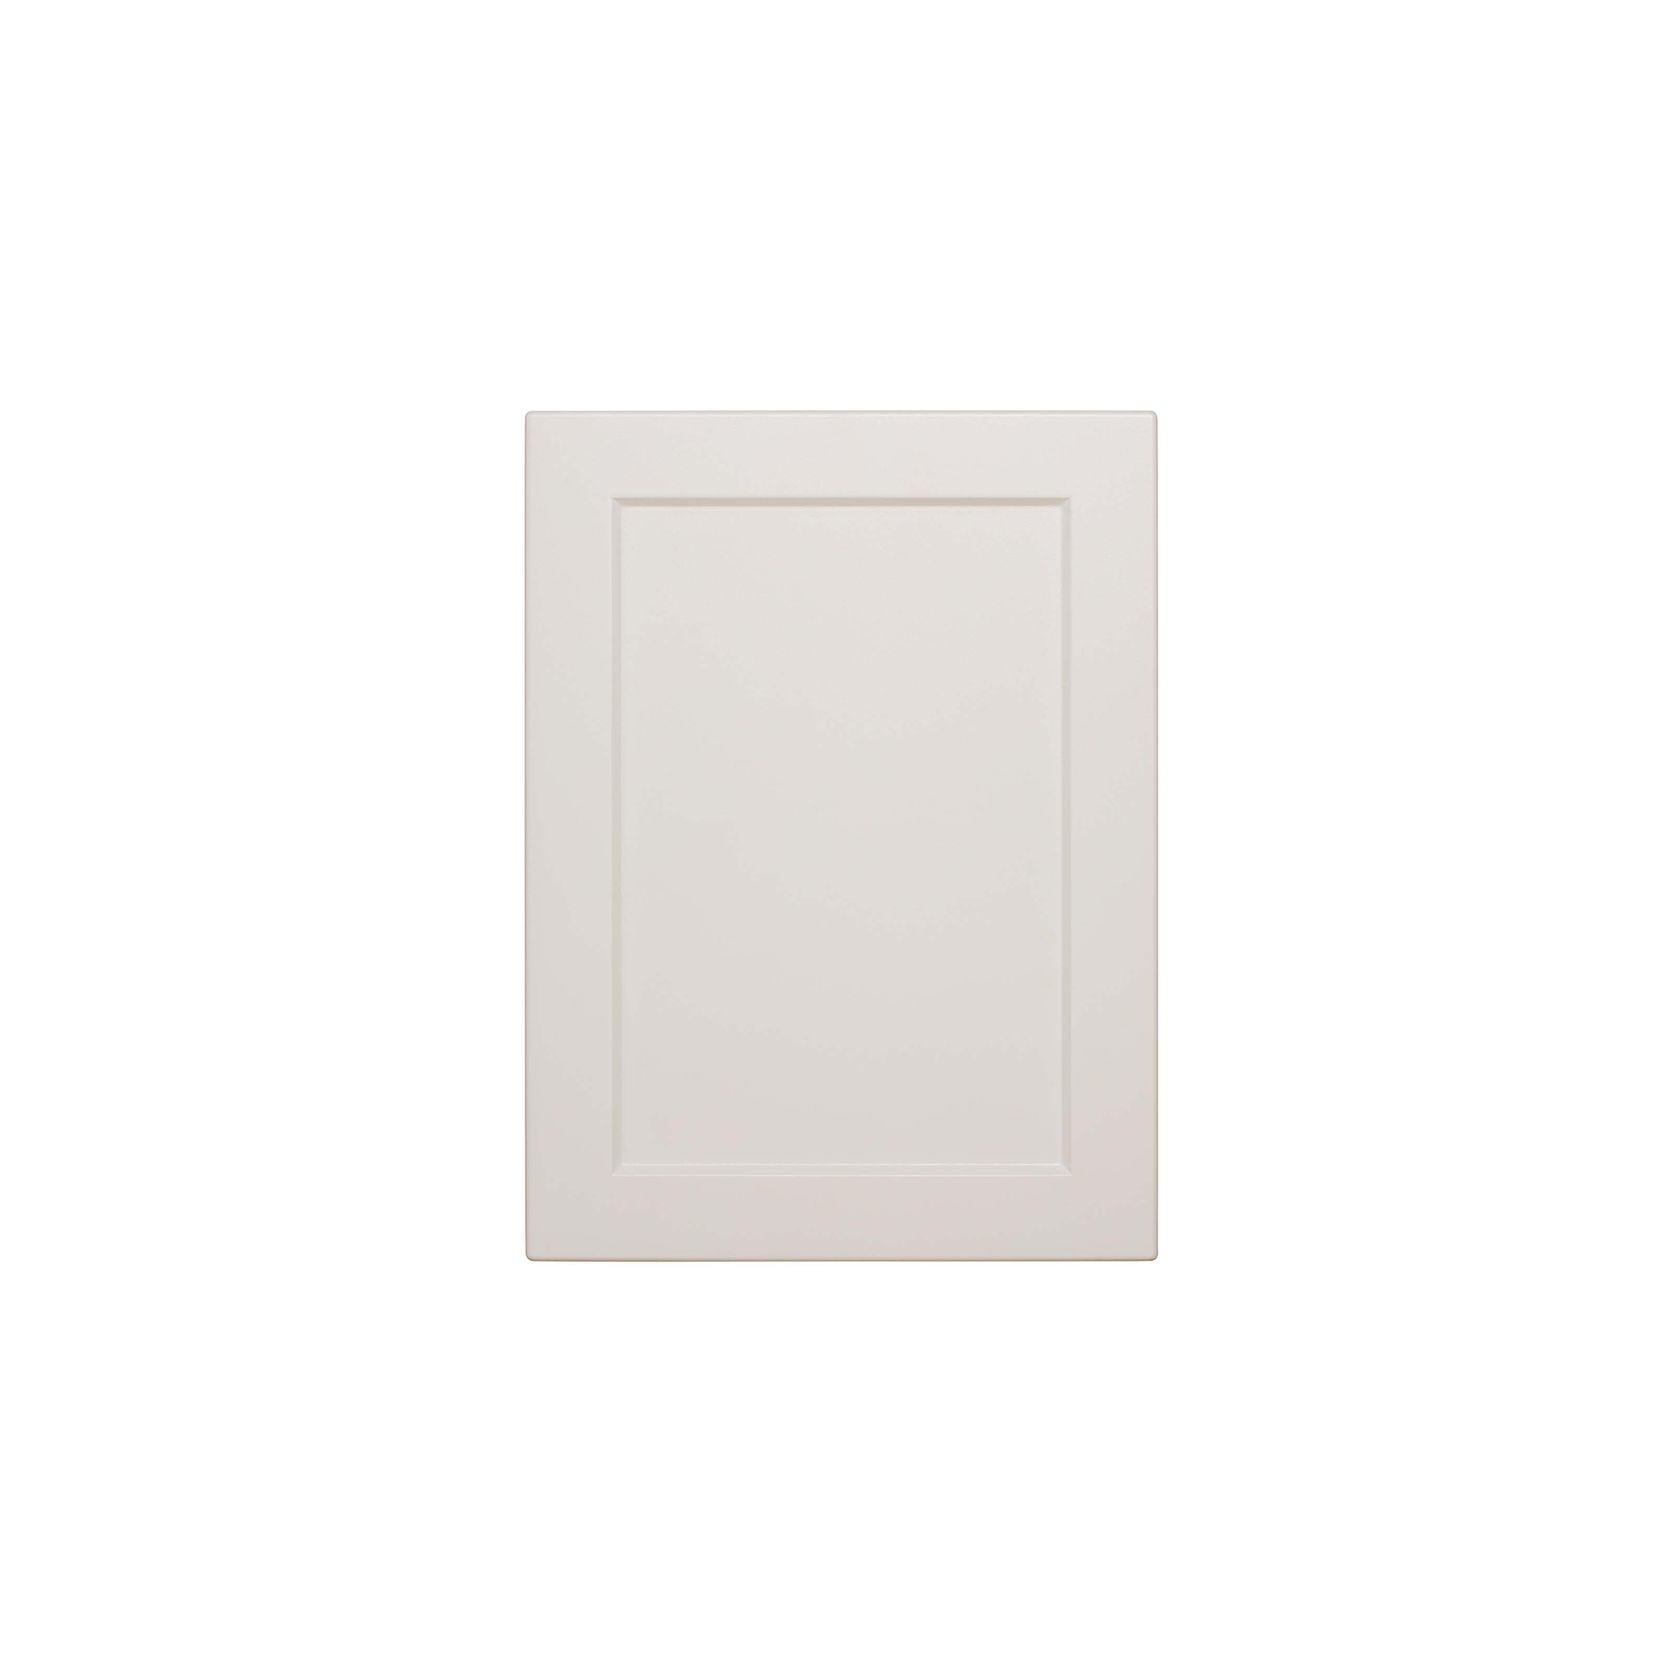 Durostyle Platinum Series - Halifax Kitchen Cabinet Doors gallery detail image